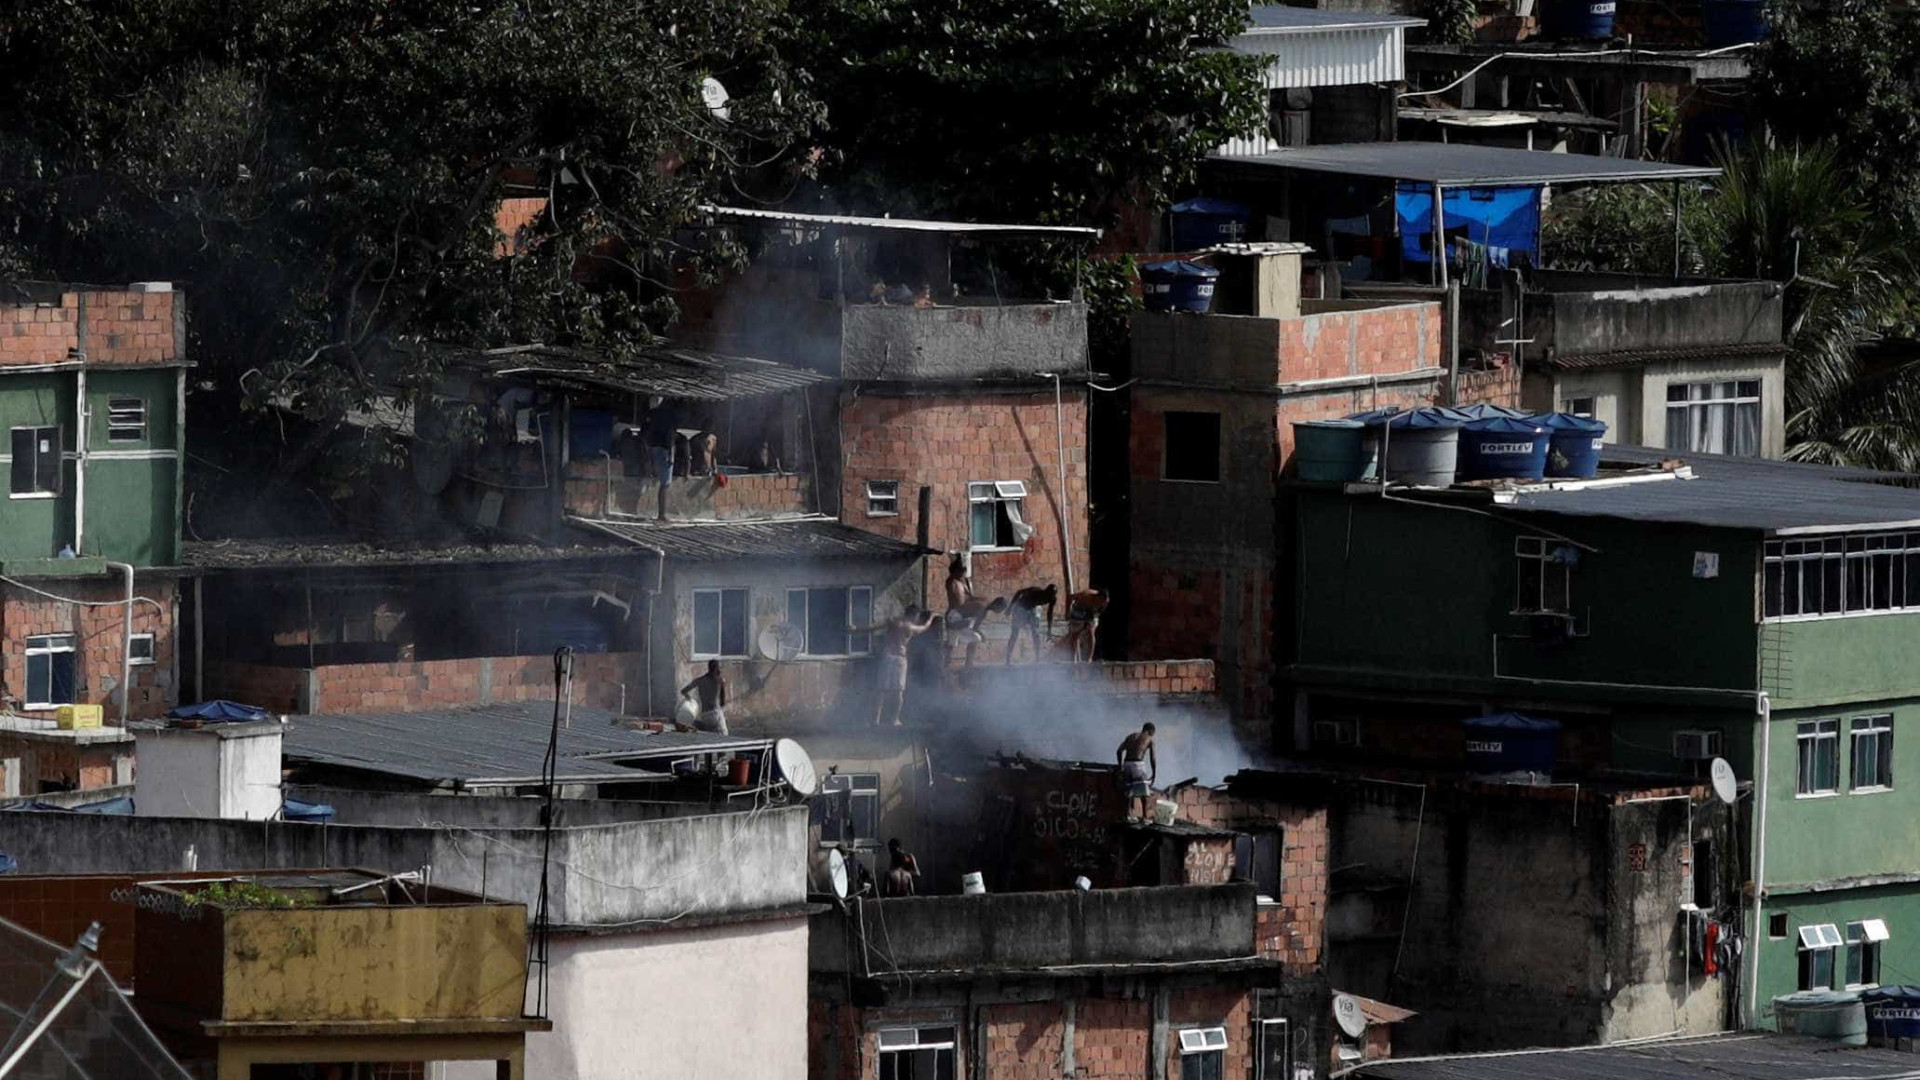 Milicianos reocupam o Rio de Janeiro